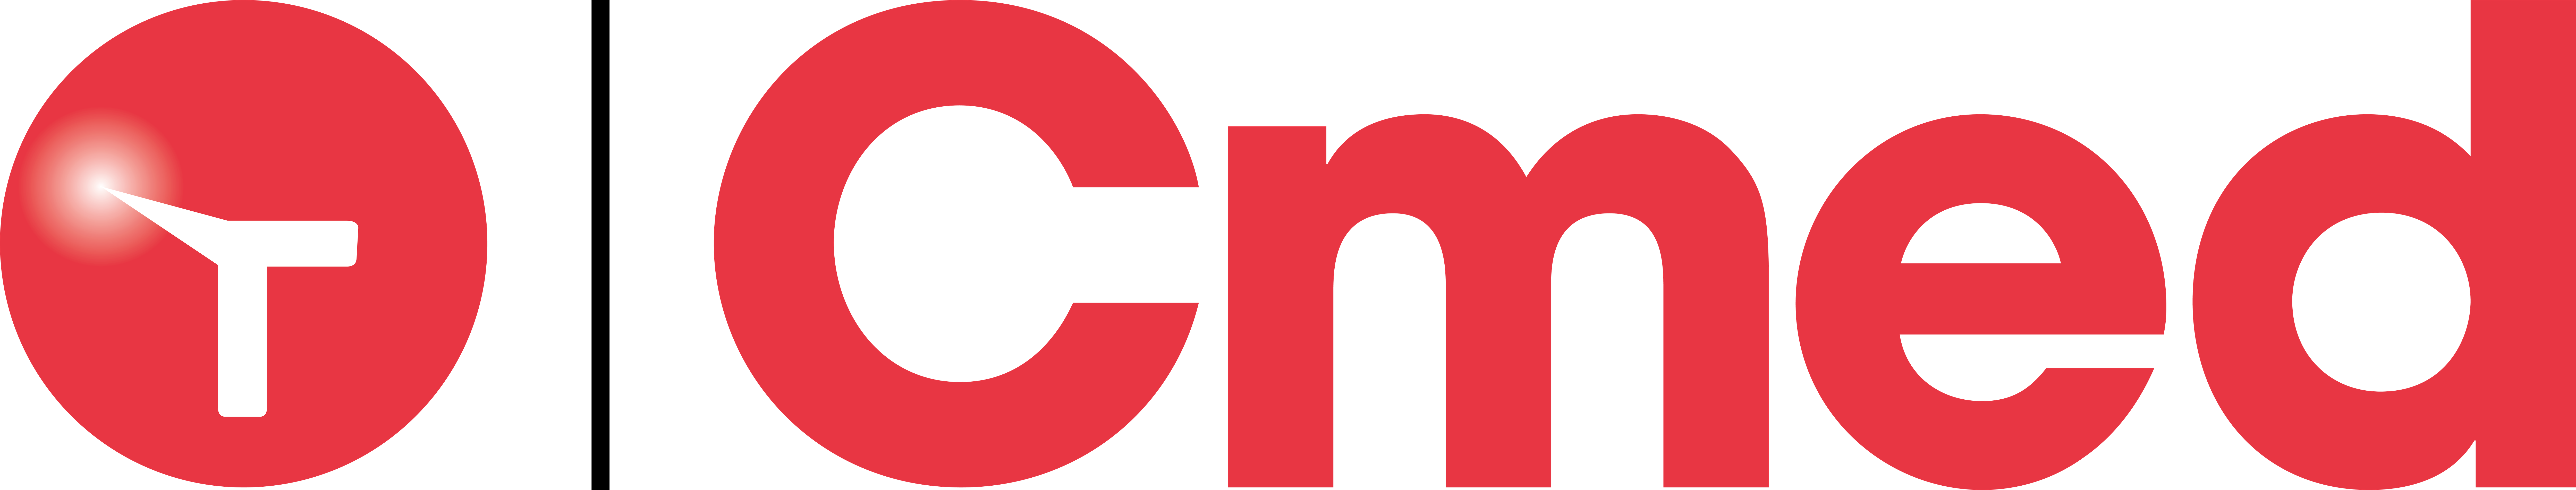 cmed-logo_no tagline_png.png